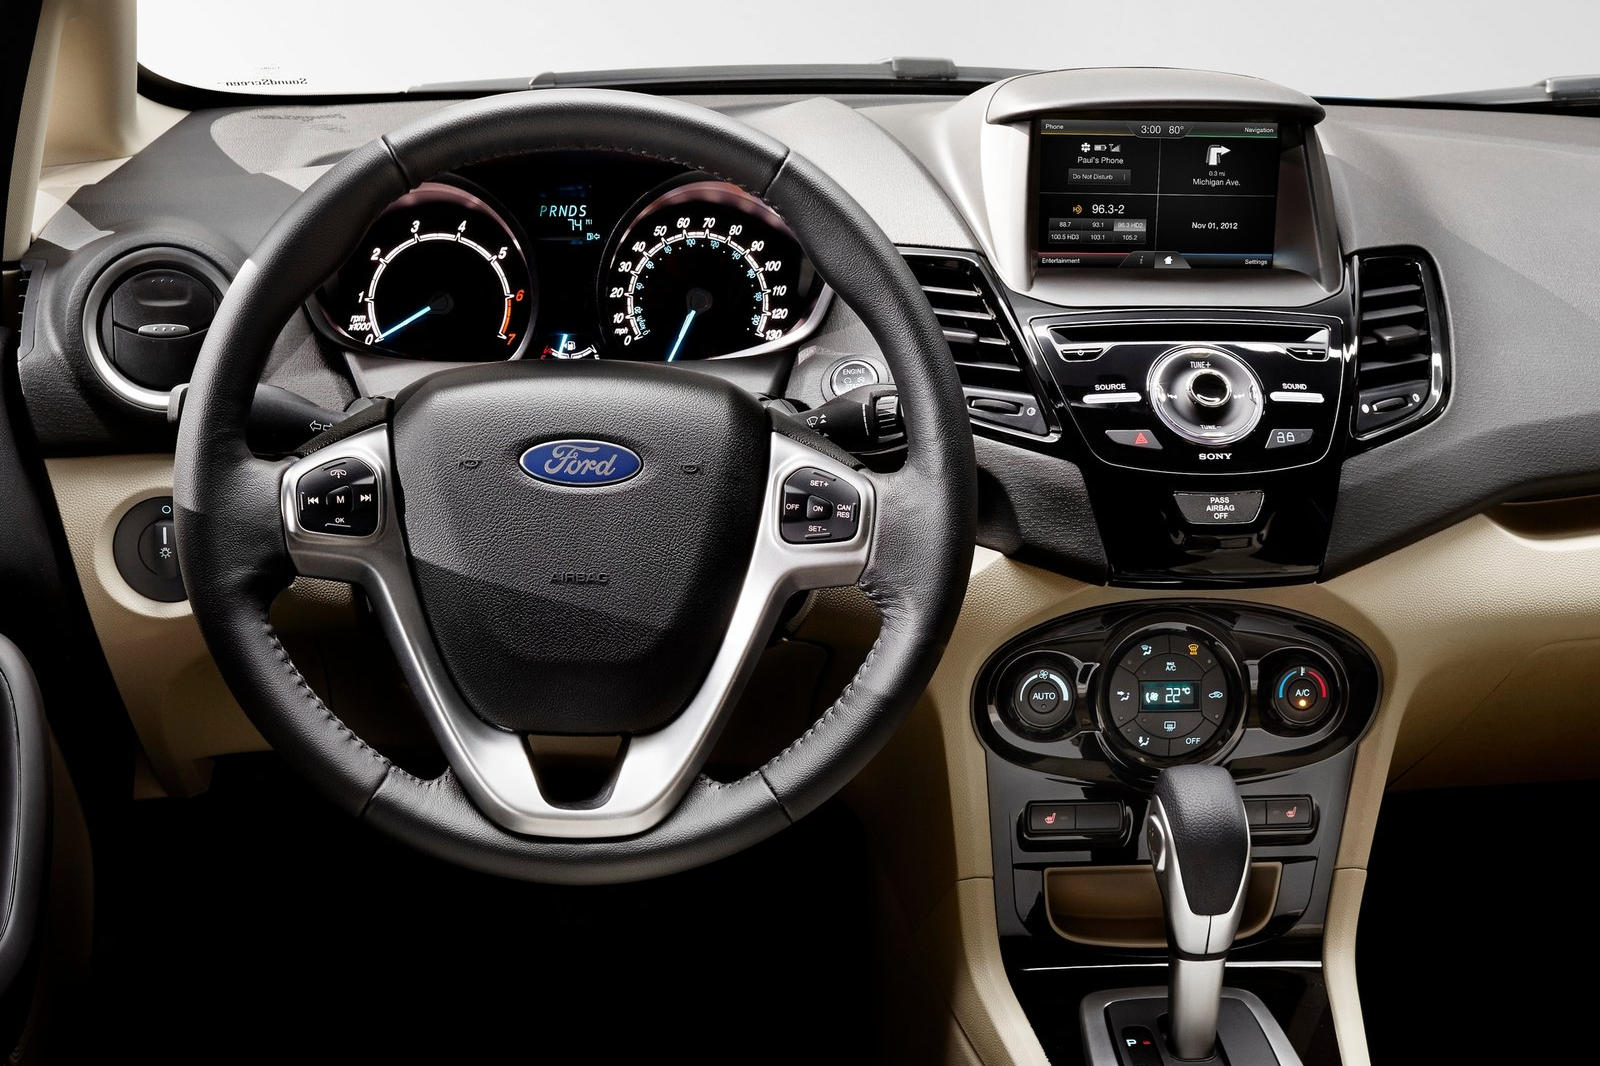 2015 Ford Fiesta Hatchback Interior Photos | CarBuzz